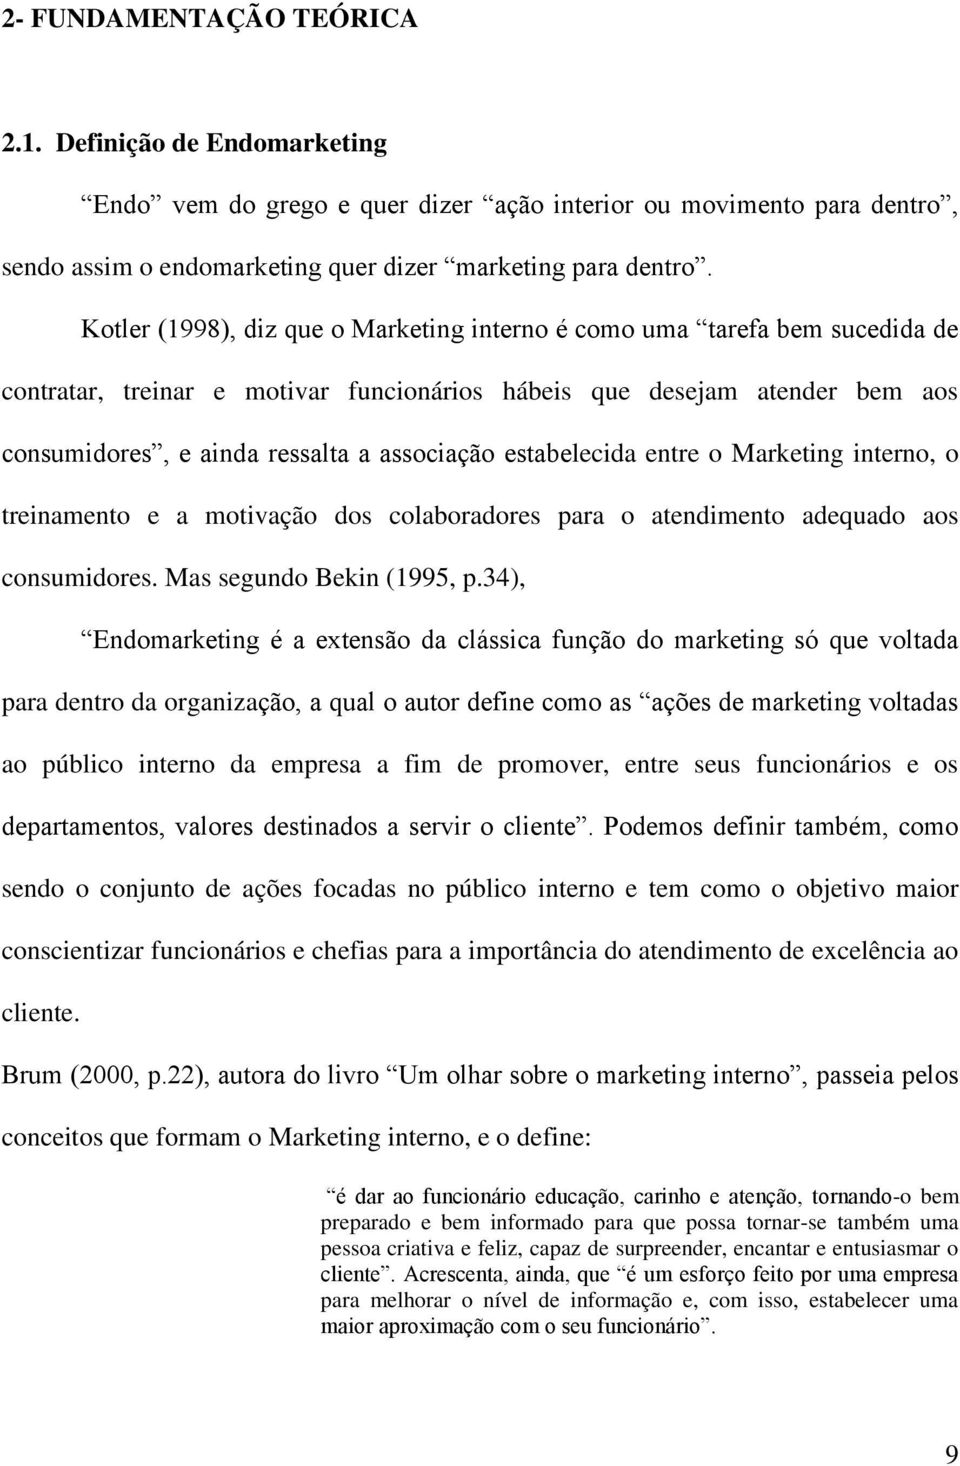 estabelecida entre o Marketing interno, o treinamento e a motivação dos colaboradores para o atendimento adequado aos consumidores. Mas segundo Bekin (1995, p.